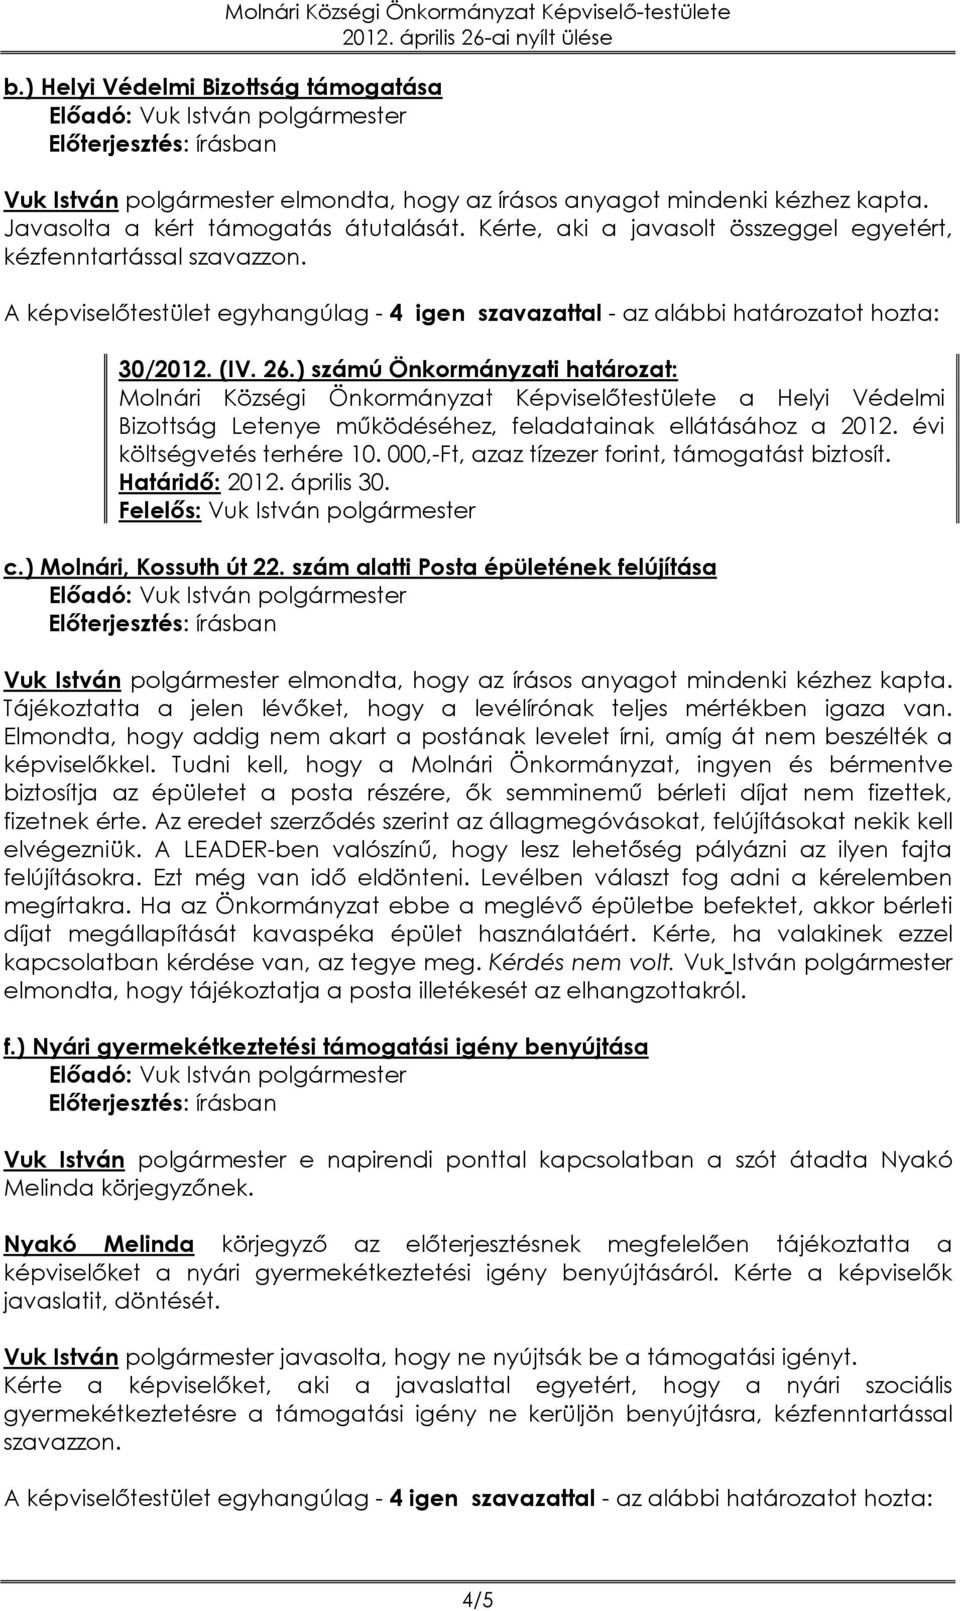 ) számú Önkormányzati határozat: Molnári Községi Önkormányzat Képviselőtestülete a Helyi Védelmi Bizottság Letenye működéséhez, feladatainak ellátásához a 2012. évi költségvetés terhére 10.